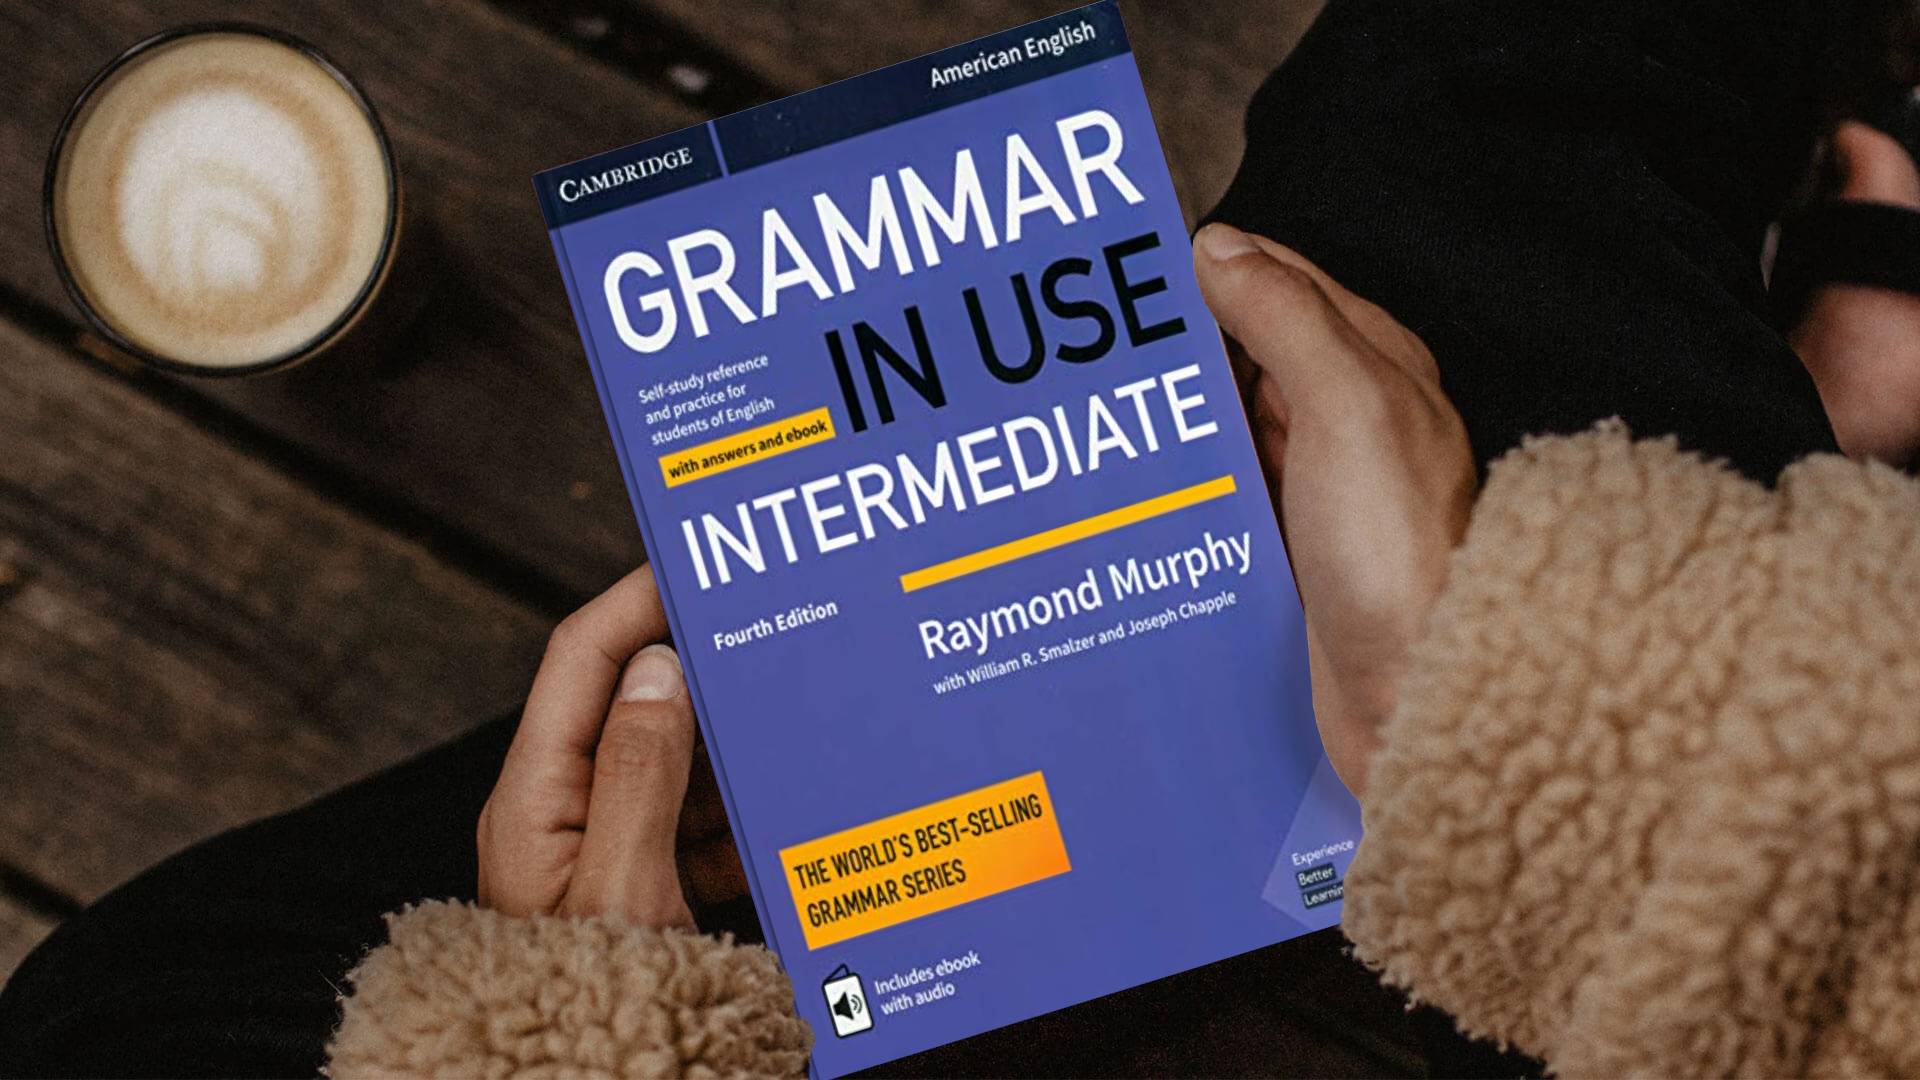 خرید کتاب دستور زبان انگلیسی | فروشگاه اینترنتی کتاب زبان | Grammar In Use Intermediate Fourth Edition | گرامر این یوز اینترمدیت ویرایش چهارم